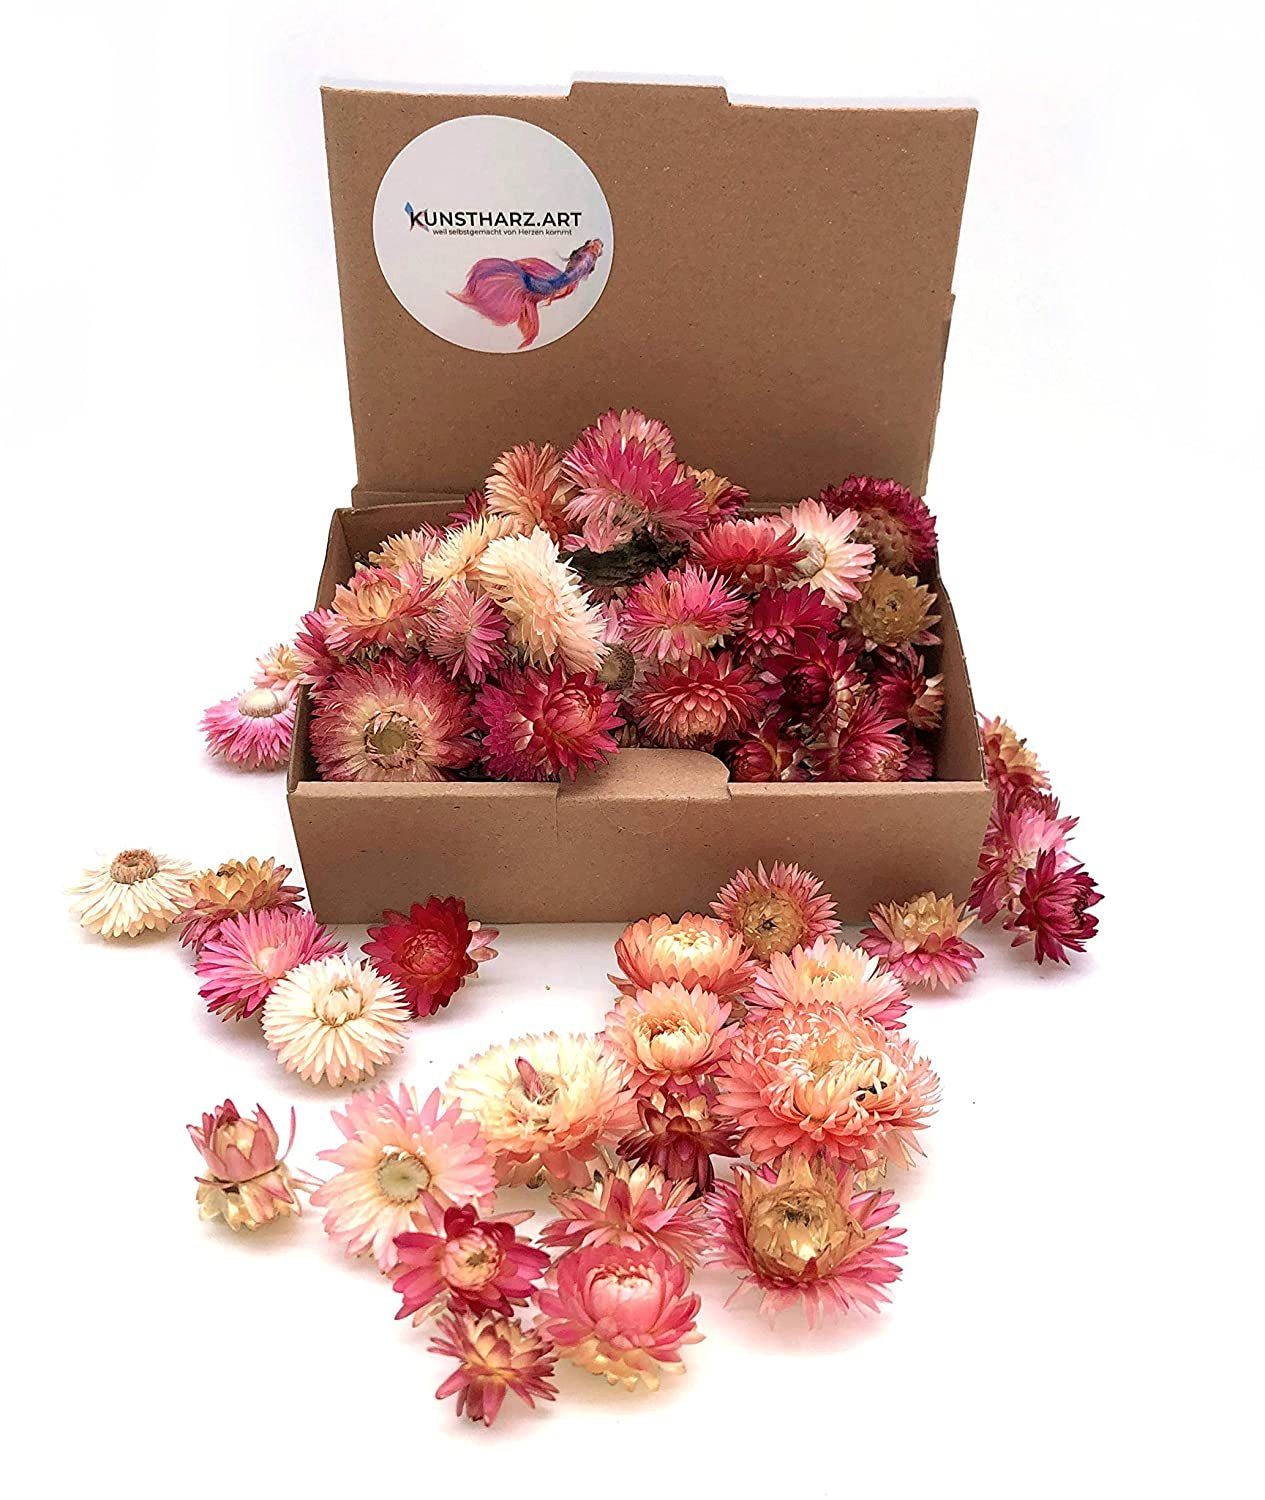 sortiert oder Helichrysum Trockenblume - Strohblumenköpfe gemischt farblich getrocknet: Rosa, Kunstharz.Art